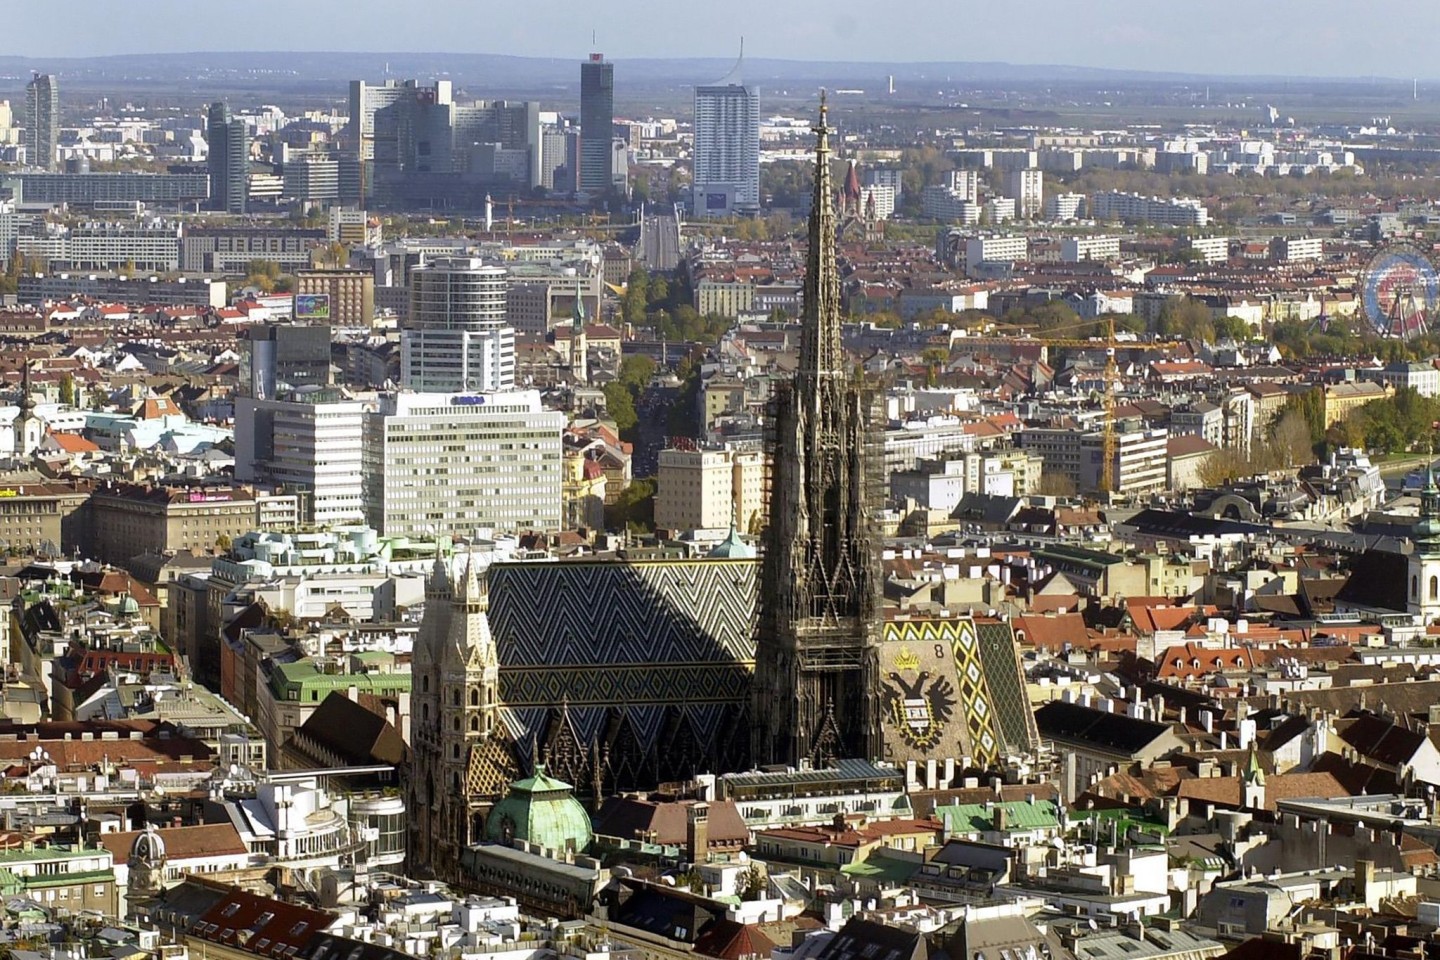 Der Stephansdom im Zentrum der Wiener Innenstadt - dort lohnt es sich laut Städte-Ranking zu leben.